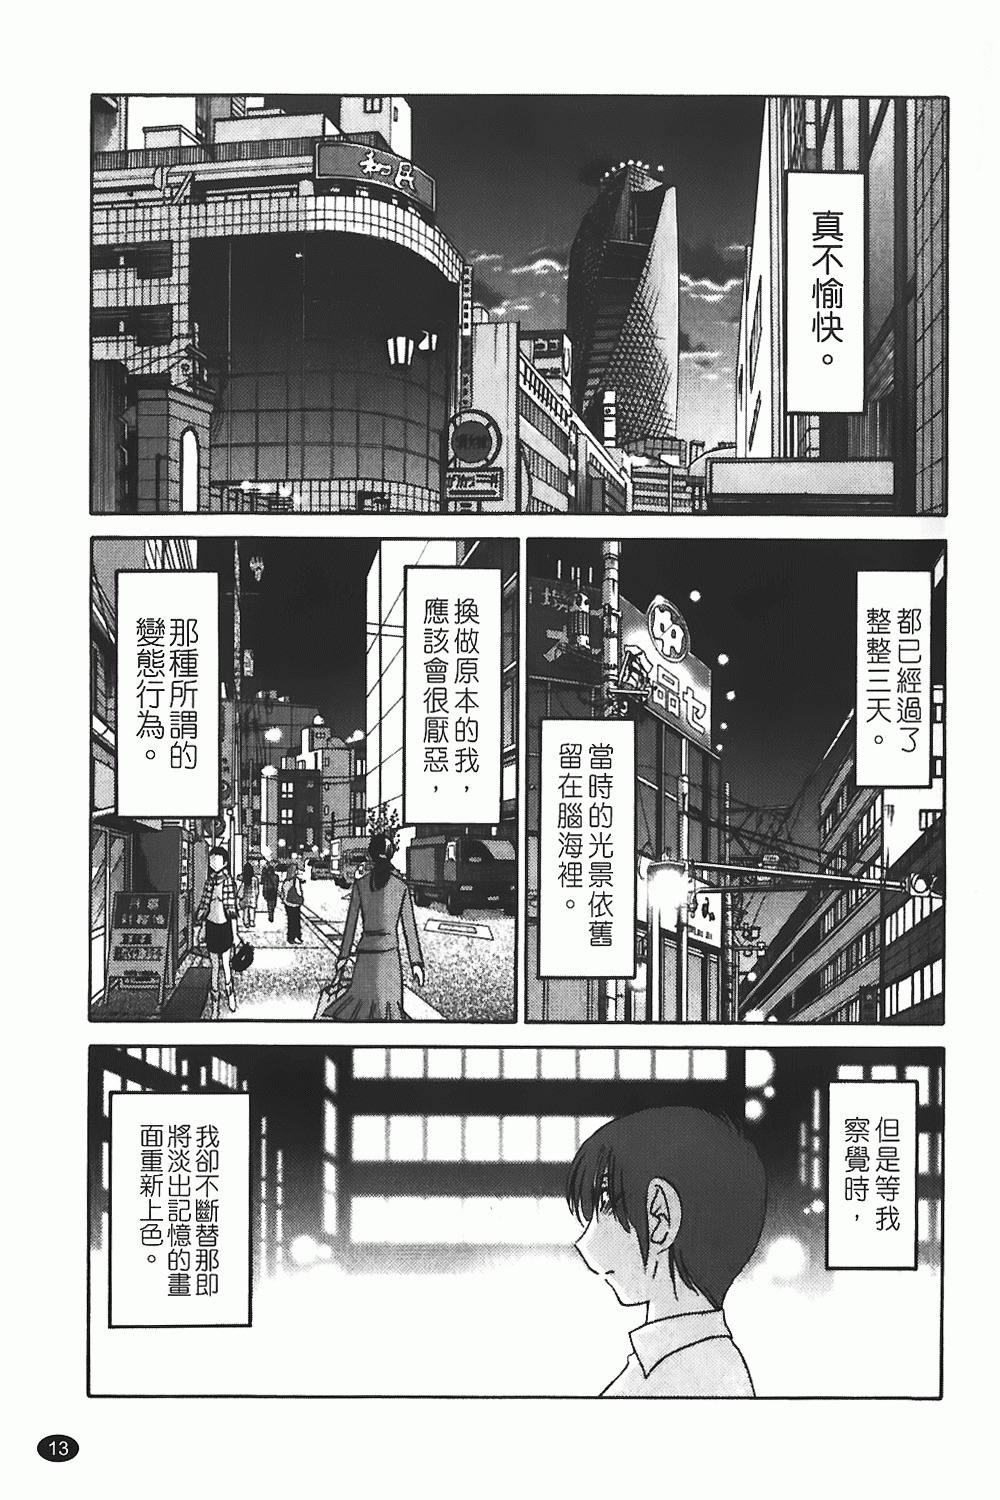 [TsuyaTsuya] Monokage no Iris 1 | 陰影中的伊利斯 1 [Chinese] page 10 full